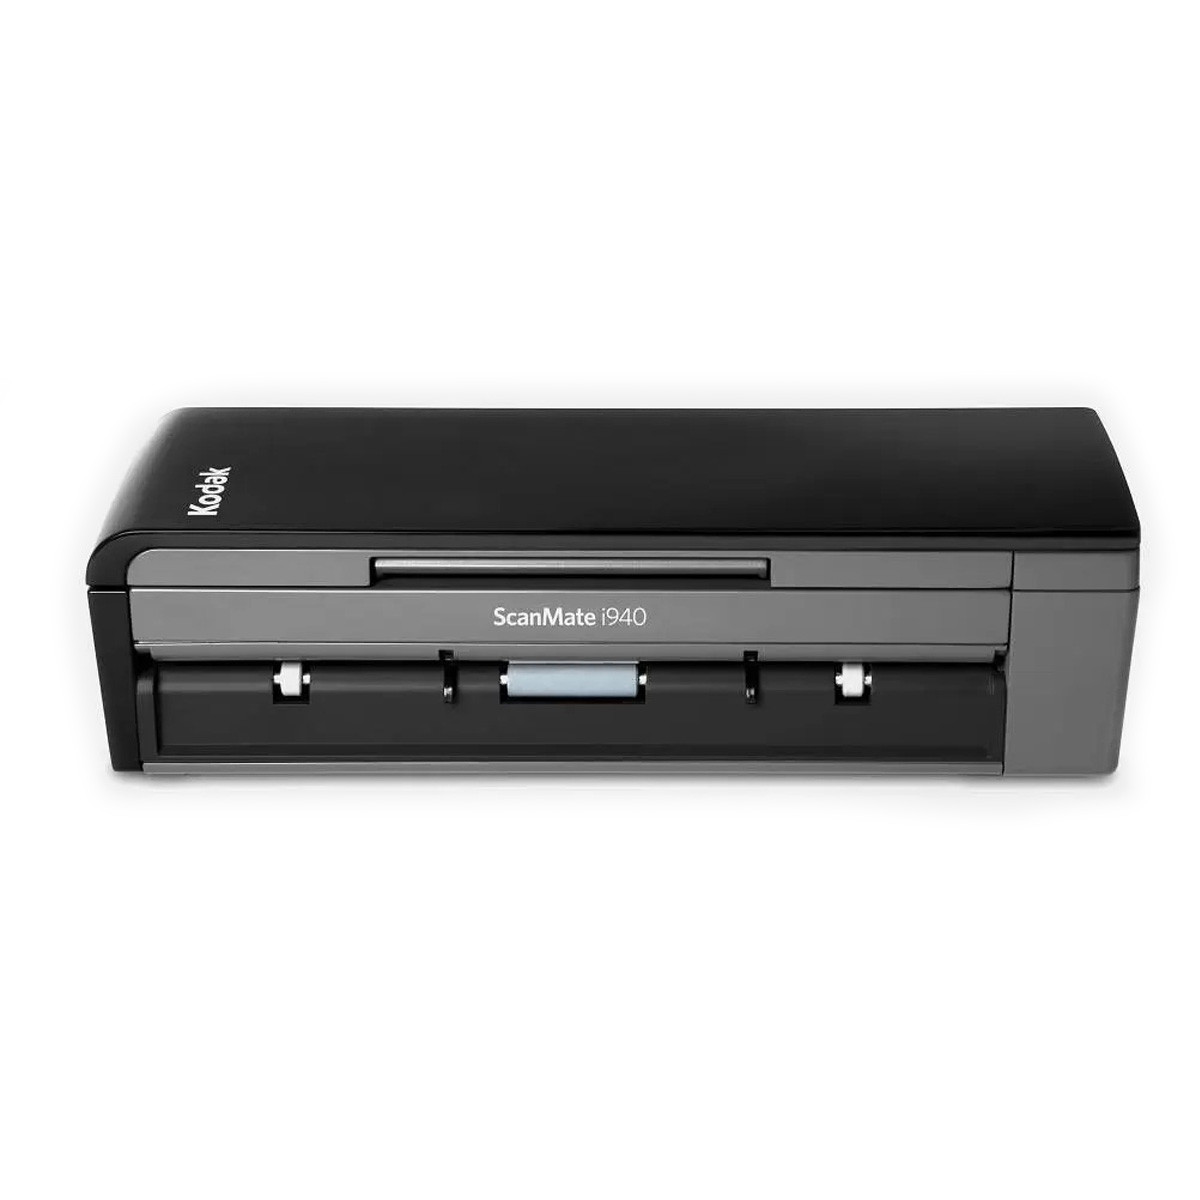 Scanner Kodak Scanmate Portátil i940 | Conexão USB ADF para 20 Folhas com Duplex